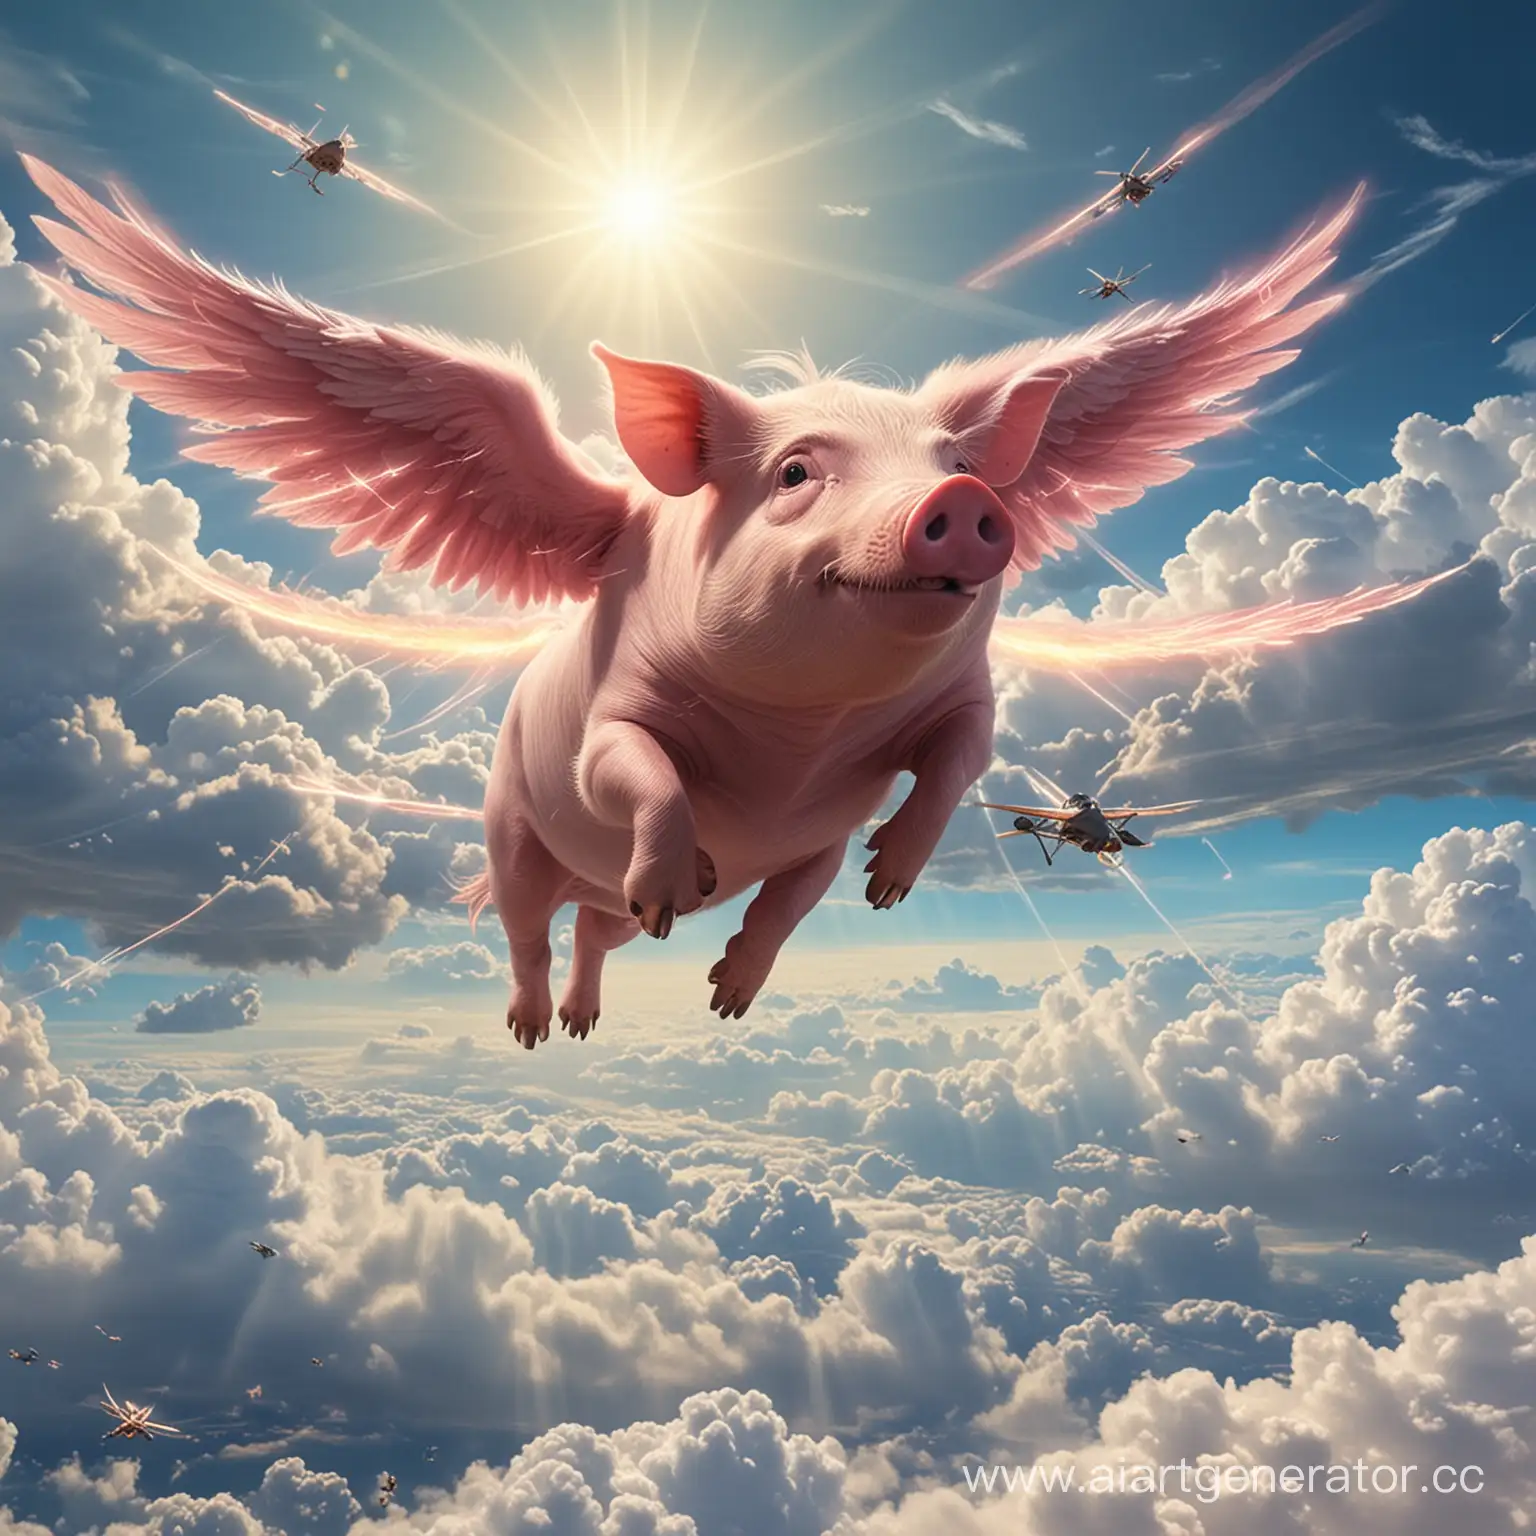 Летающая(с крыльями) свинья с лазерами вместо глаз и с шестью конечностями летает в облаках